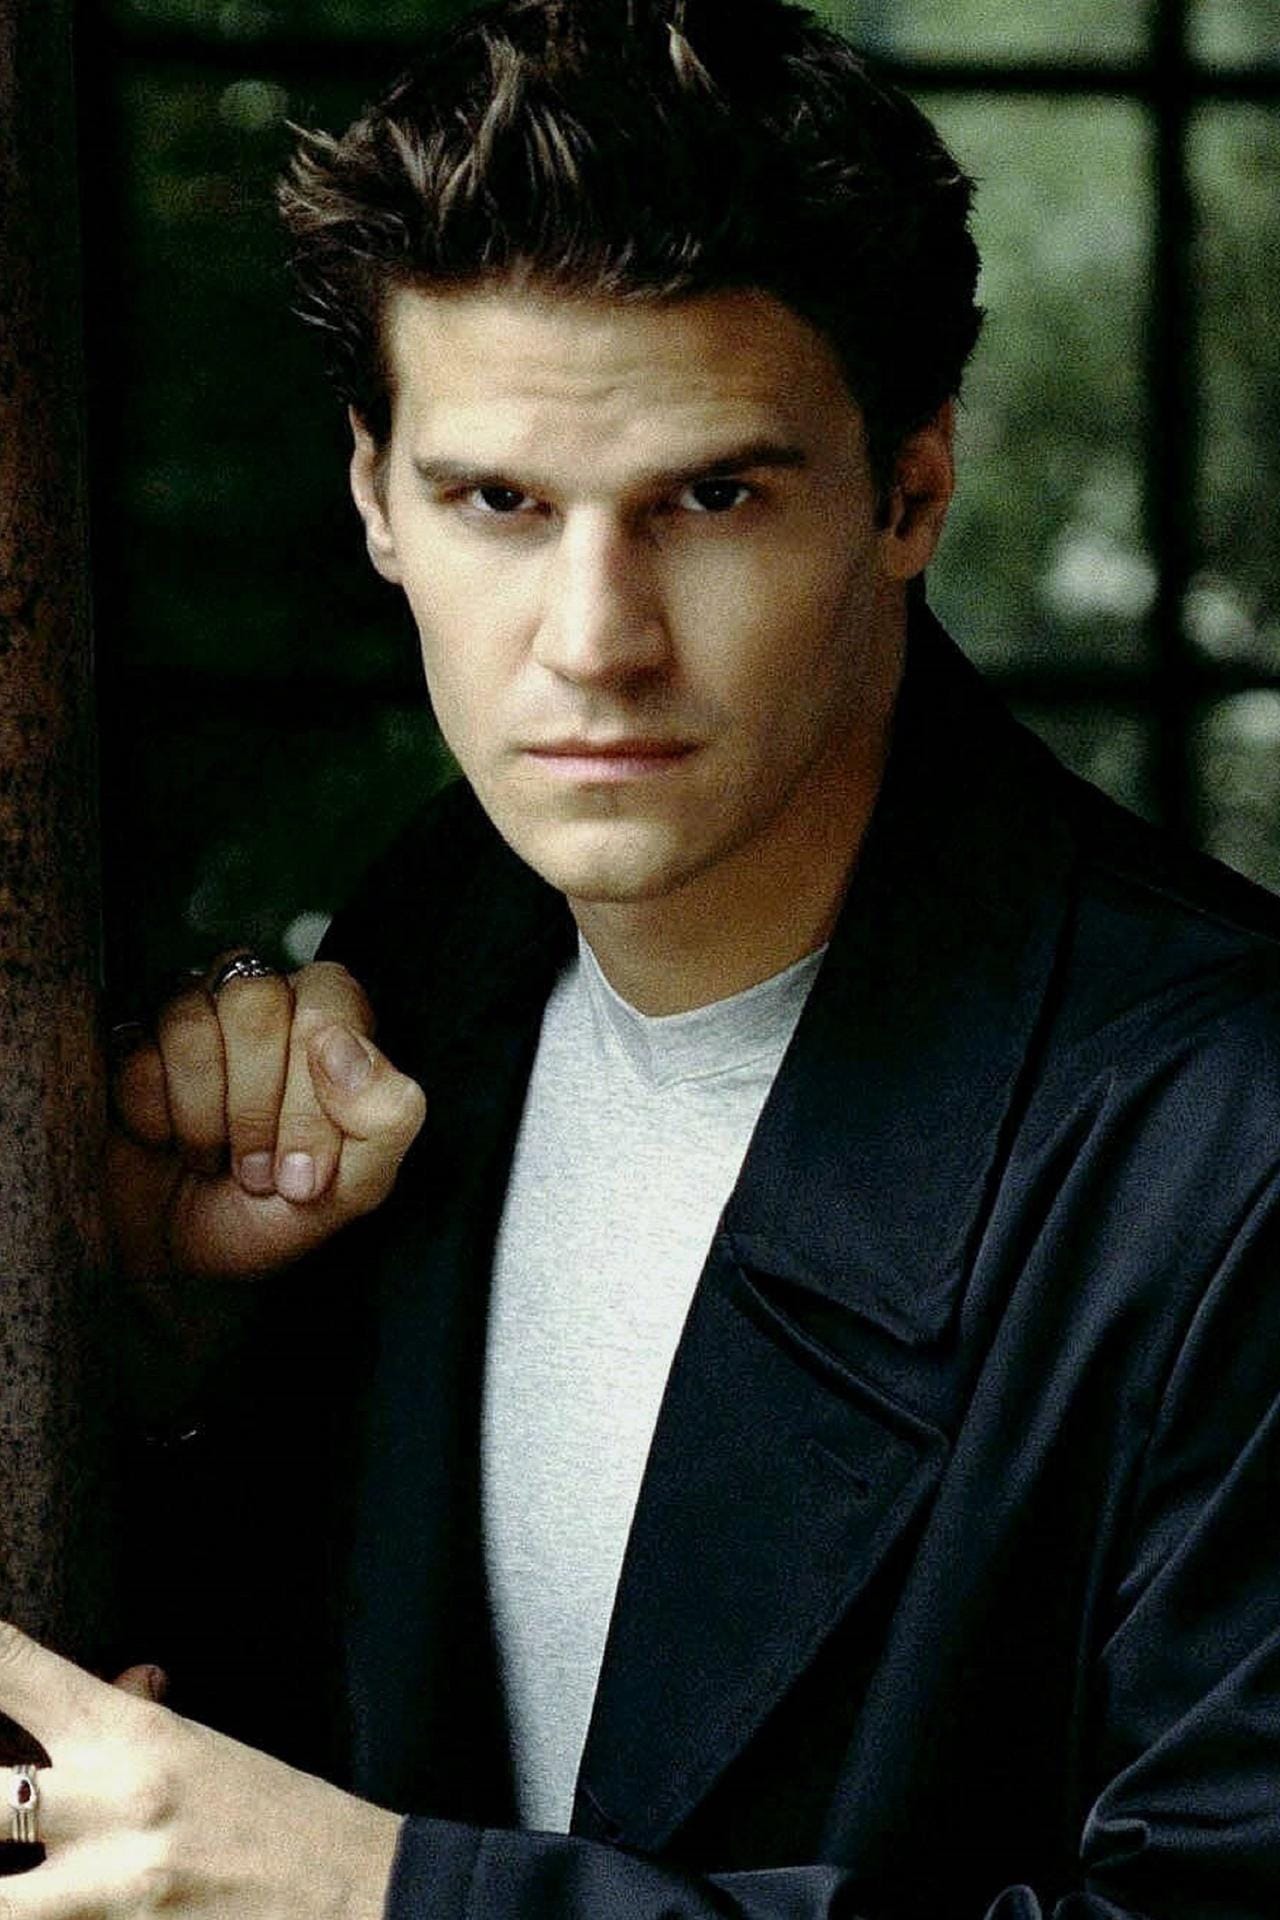 David Boreanaz spielte Angel. Er bekam nur zwei Jahre nach dem Start von "Buffy" eine eigene Serie: "Angel – Jäger der Finsternis".